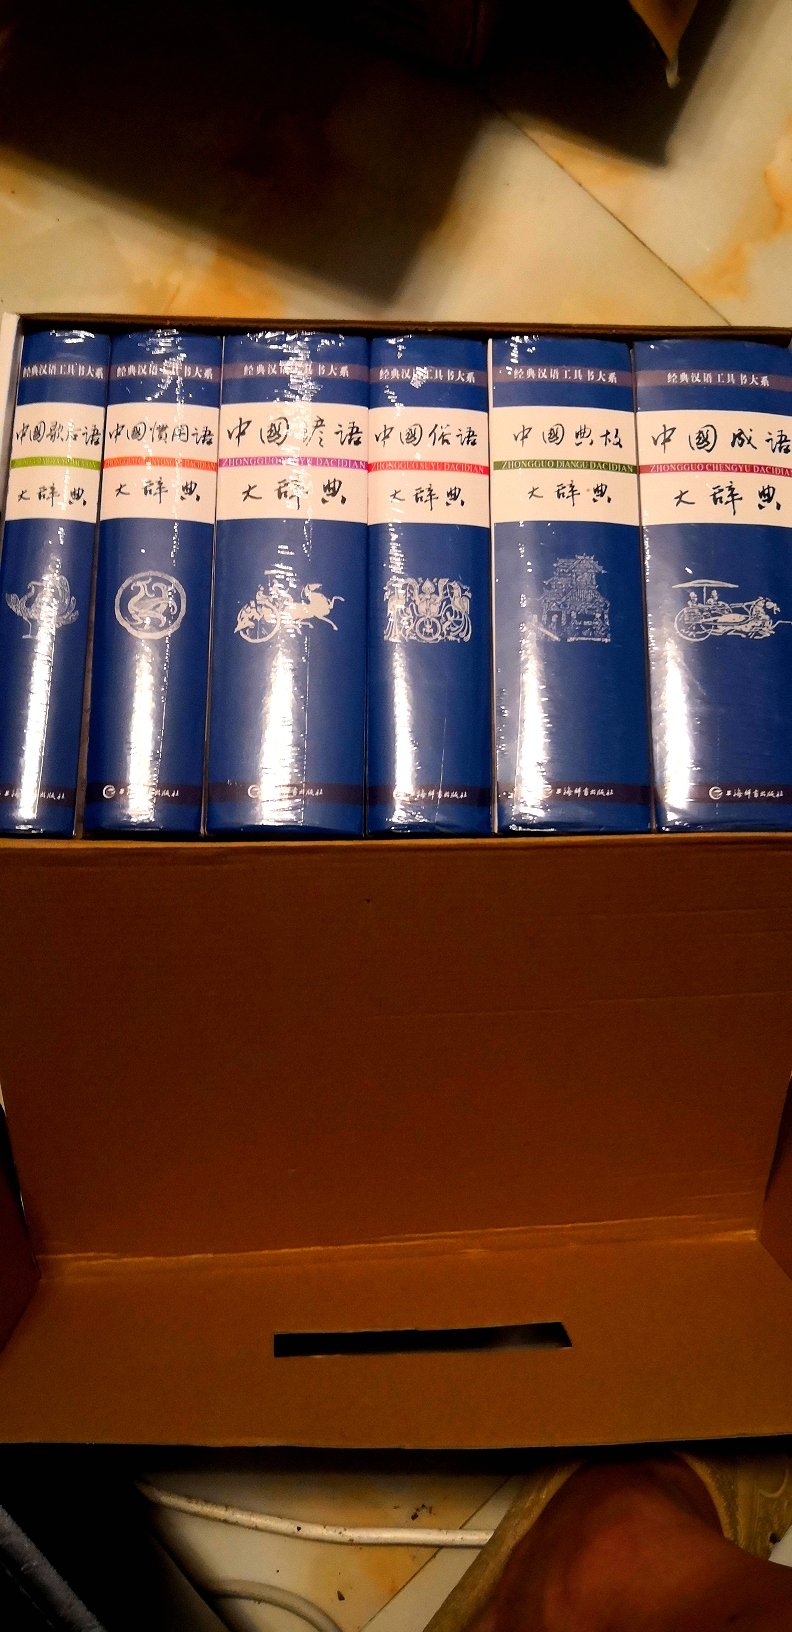 上海辞书出版社的最经典，最权威的一套汉语工具书，6本厚实的辞书，儿时的梦想现在成真了。包装精美，物流快，好评。